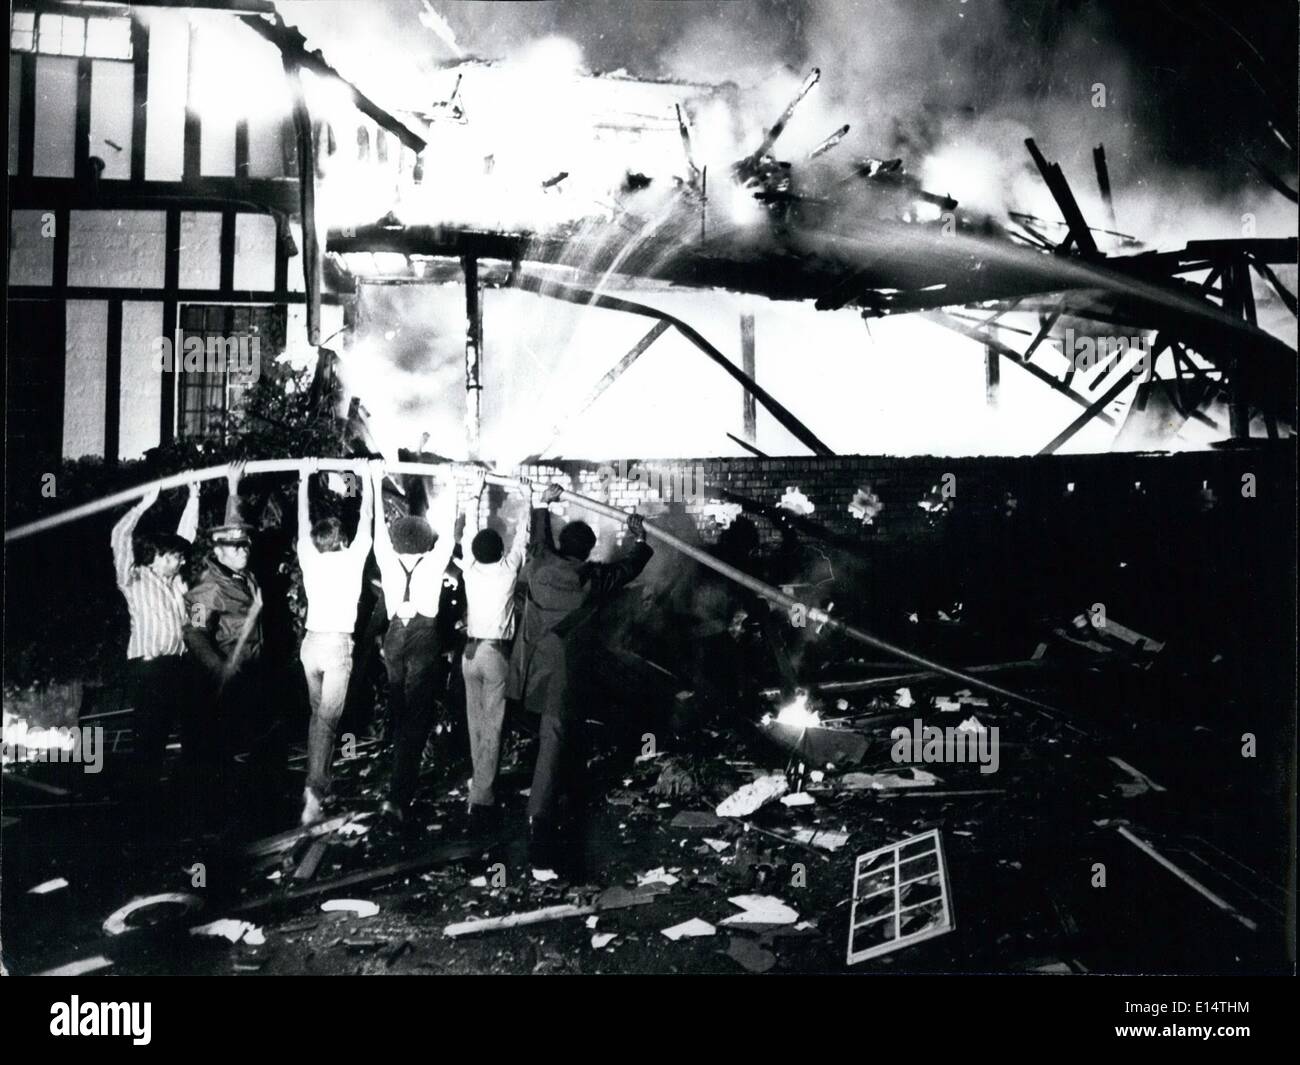 Abril 18, 2012 - Nairobi Kenya: civiles y bomberos se unen para tratar de extinguir las llamas, que arrasaron los escombros del Hotel Norfolk, Nairobi, tarde en la víspera de Año Nuevo y temprano el día de Año Nuevo después de una explosión masiva arruinado el 68 año viejo edificio. Créditos: Camerapix Foto de stock